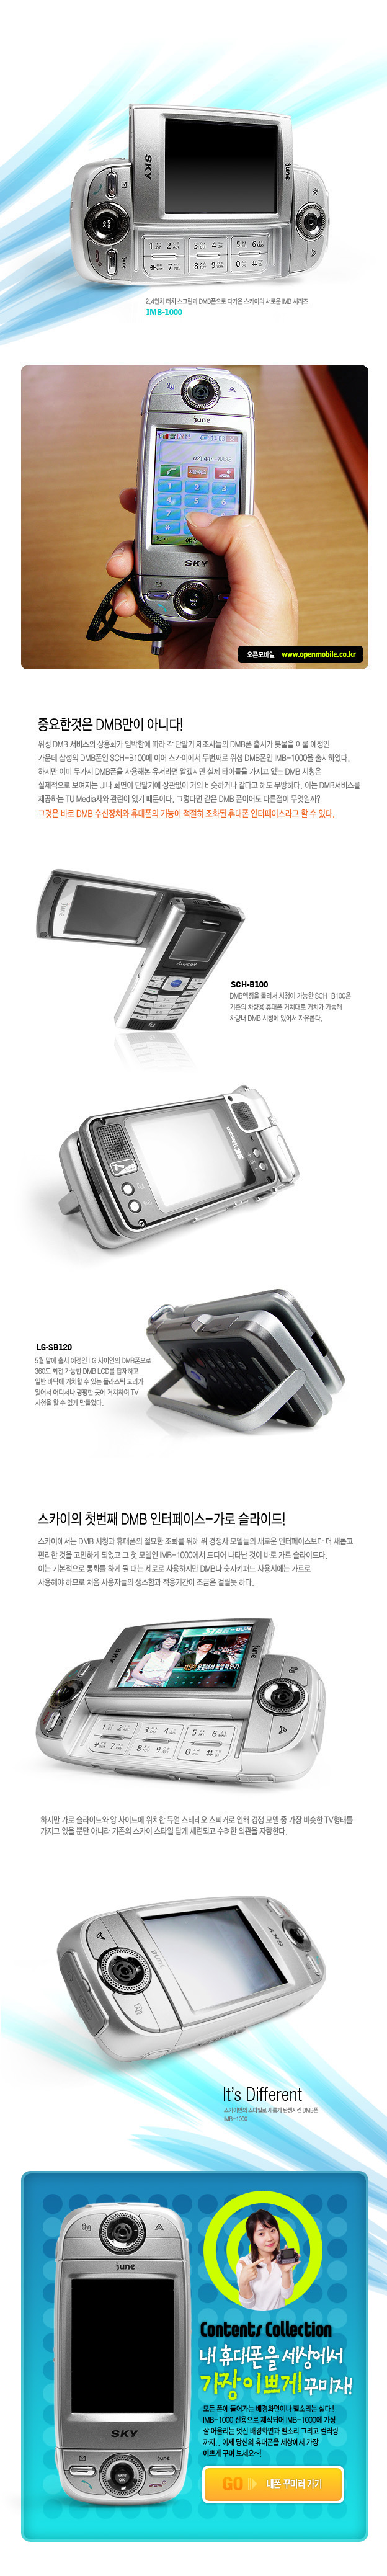 韩国手机设计(1)